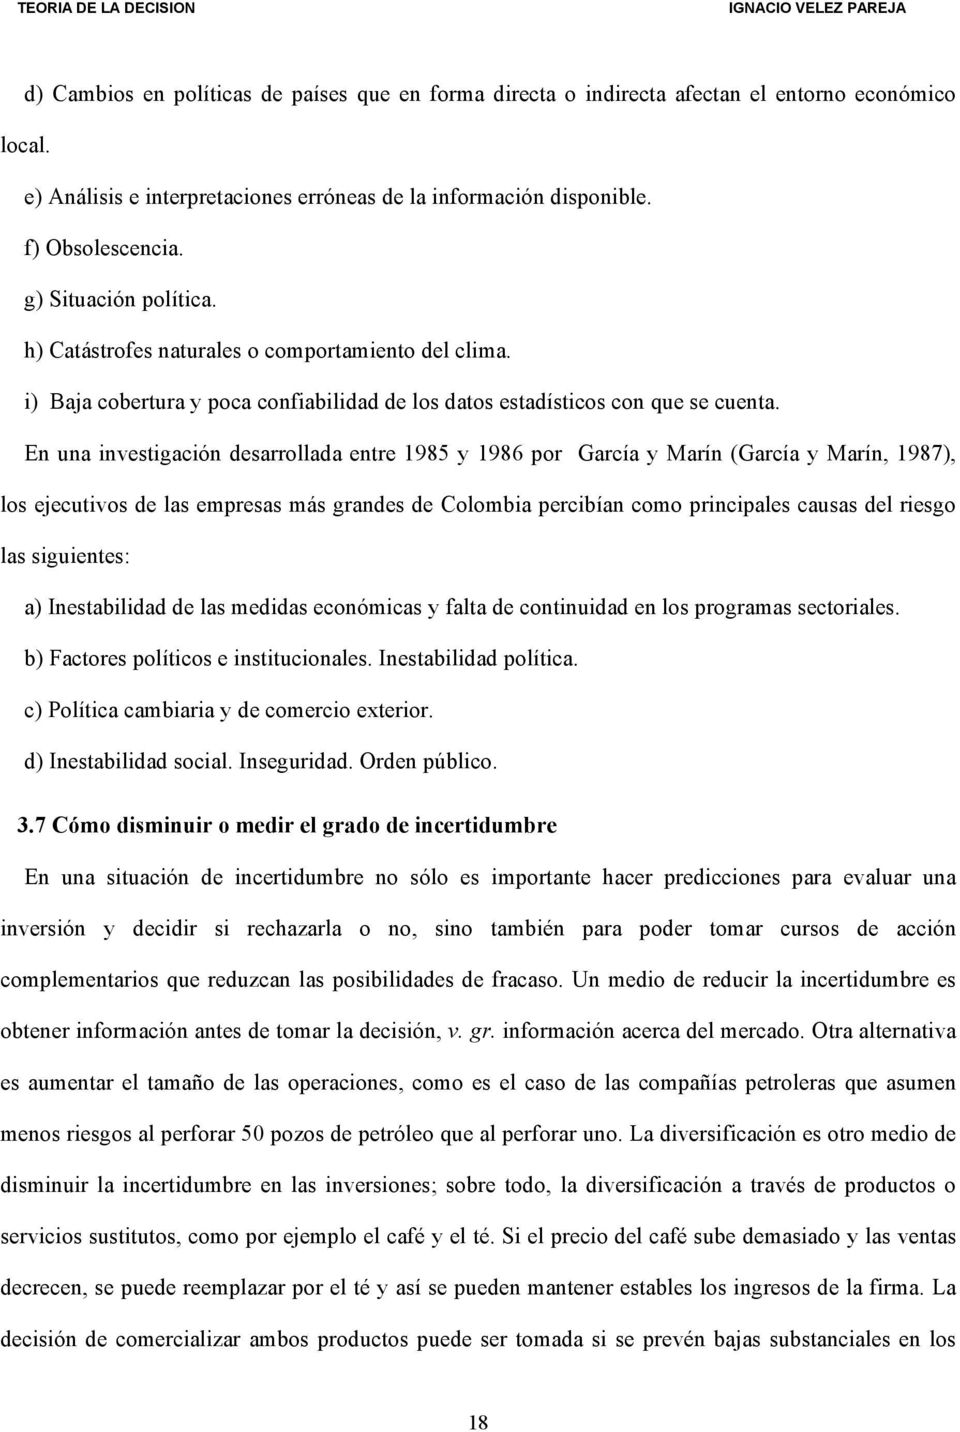 En una investigación desarrollada entre 1985 y 1986 por García y Marín (García y Marín, 1987), los ejecutivos de las empresas más grandes de Colombia percibían como principales causas del riesgo las